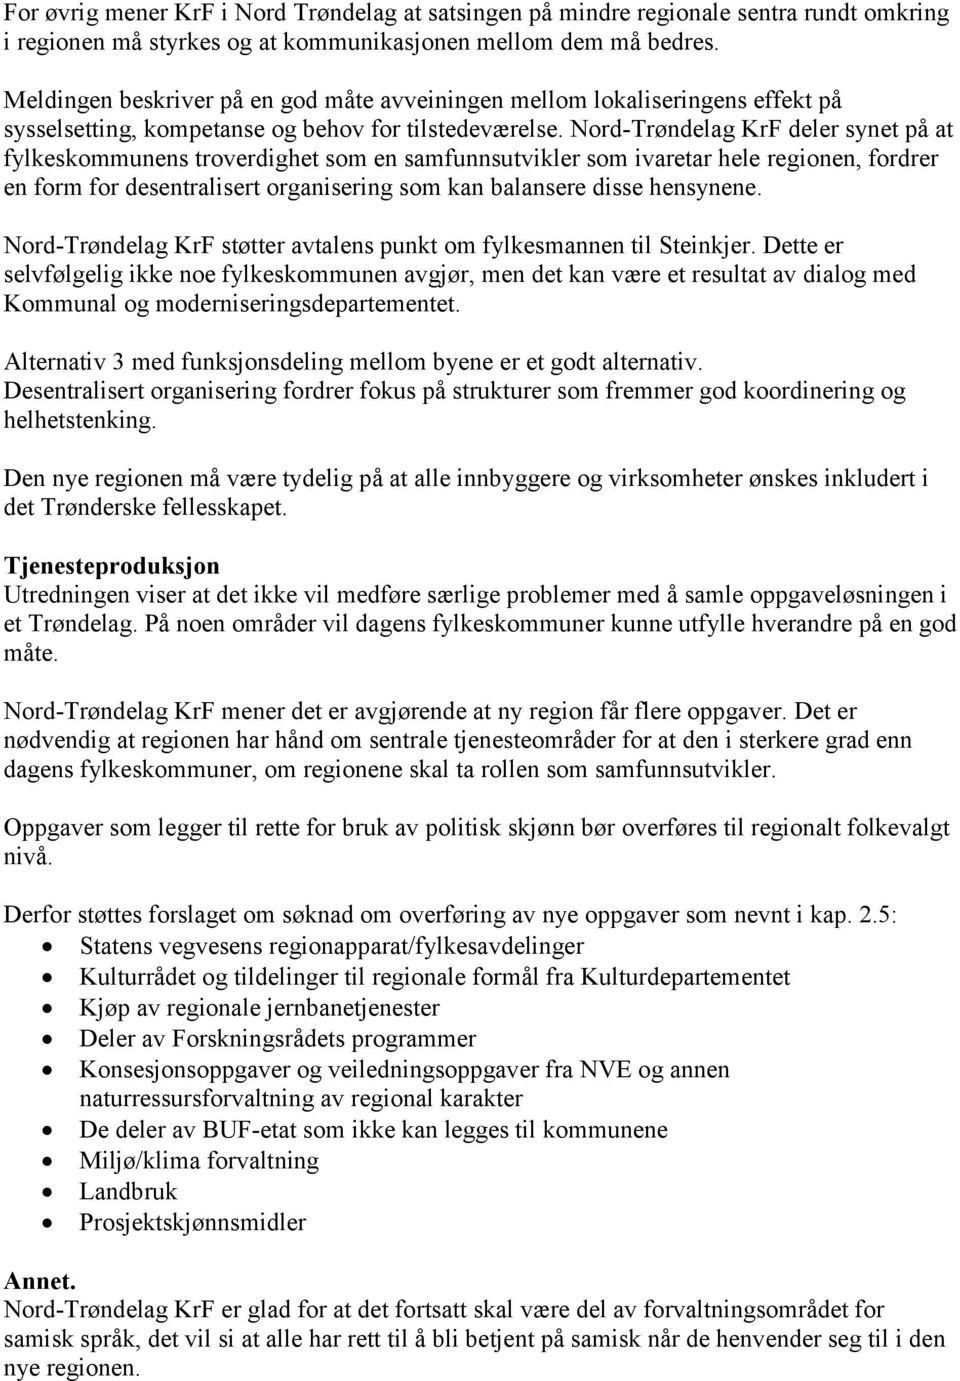 Nord-Trøndelag KrF deler synet på at fylkeskommunens troverdighet som en samfunnsutvikler som ivaretar hele regionen, fordrer en form for desentralisert organisering som kan balansere disse hensynene.